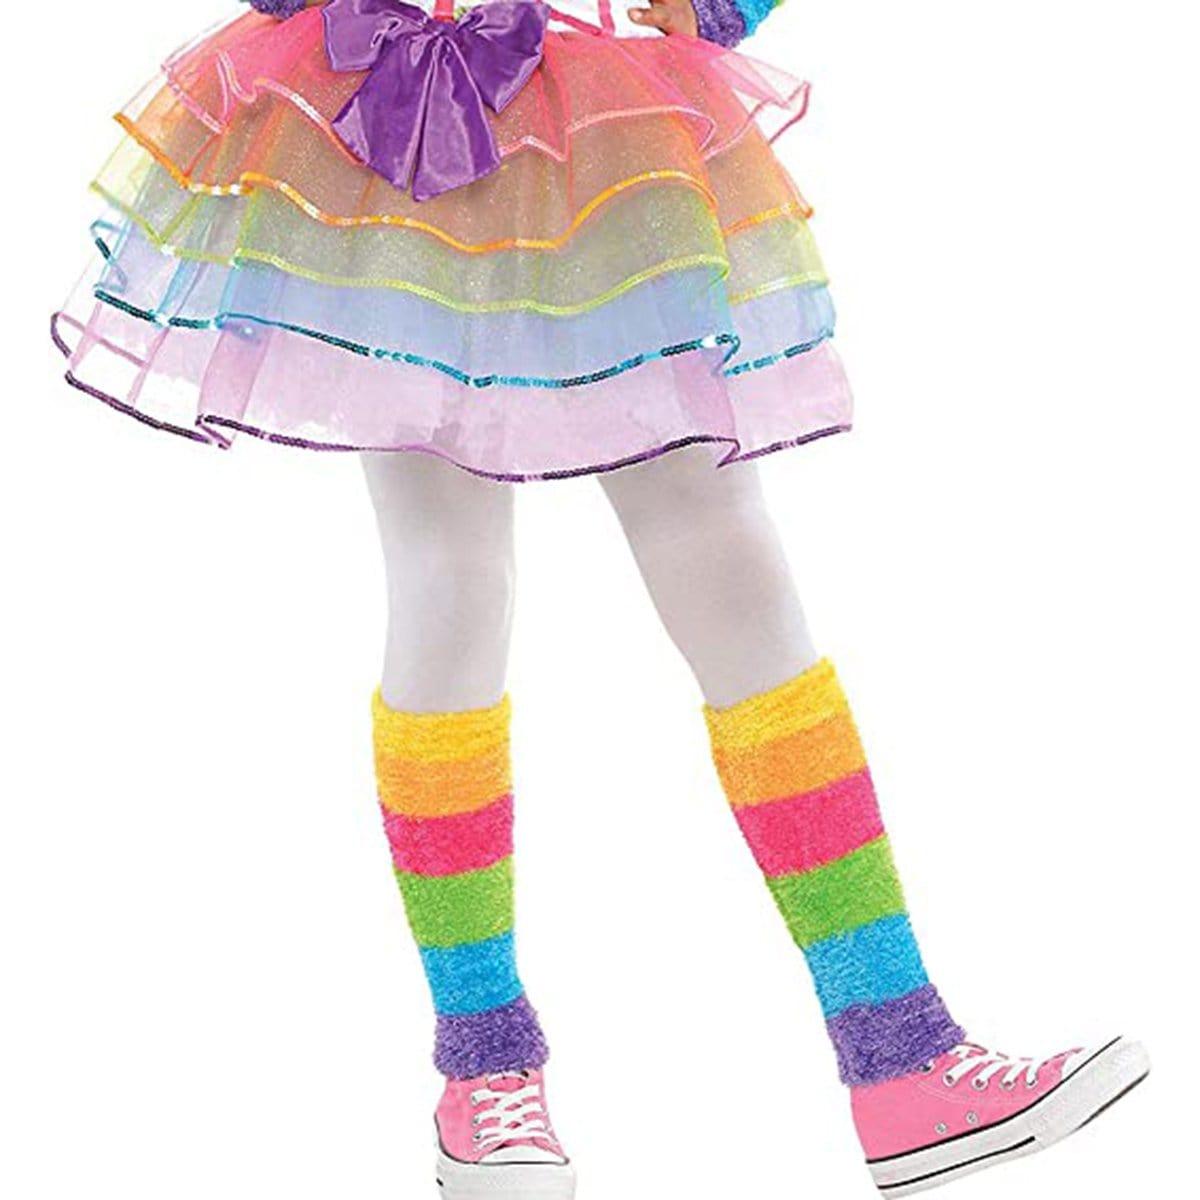 Deguisement Licorne Enfant, Costume de Licorne arc-en-ciel pour Filles,  Licorne Déguisement Accessoireet Bracelet Boucles d'oreilles  Bague,Deguisement